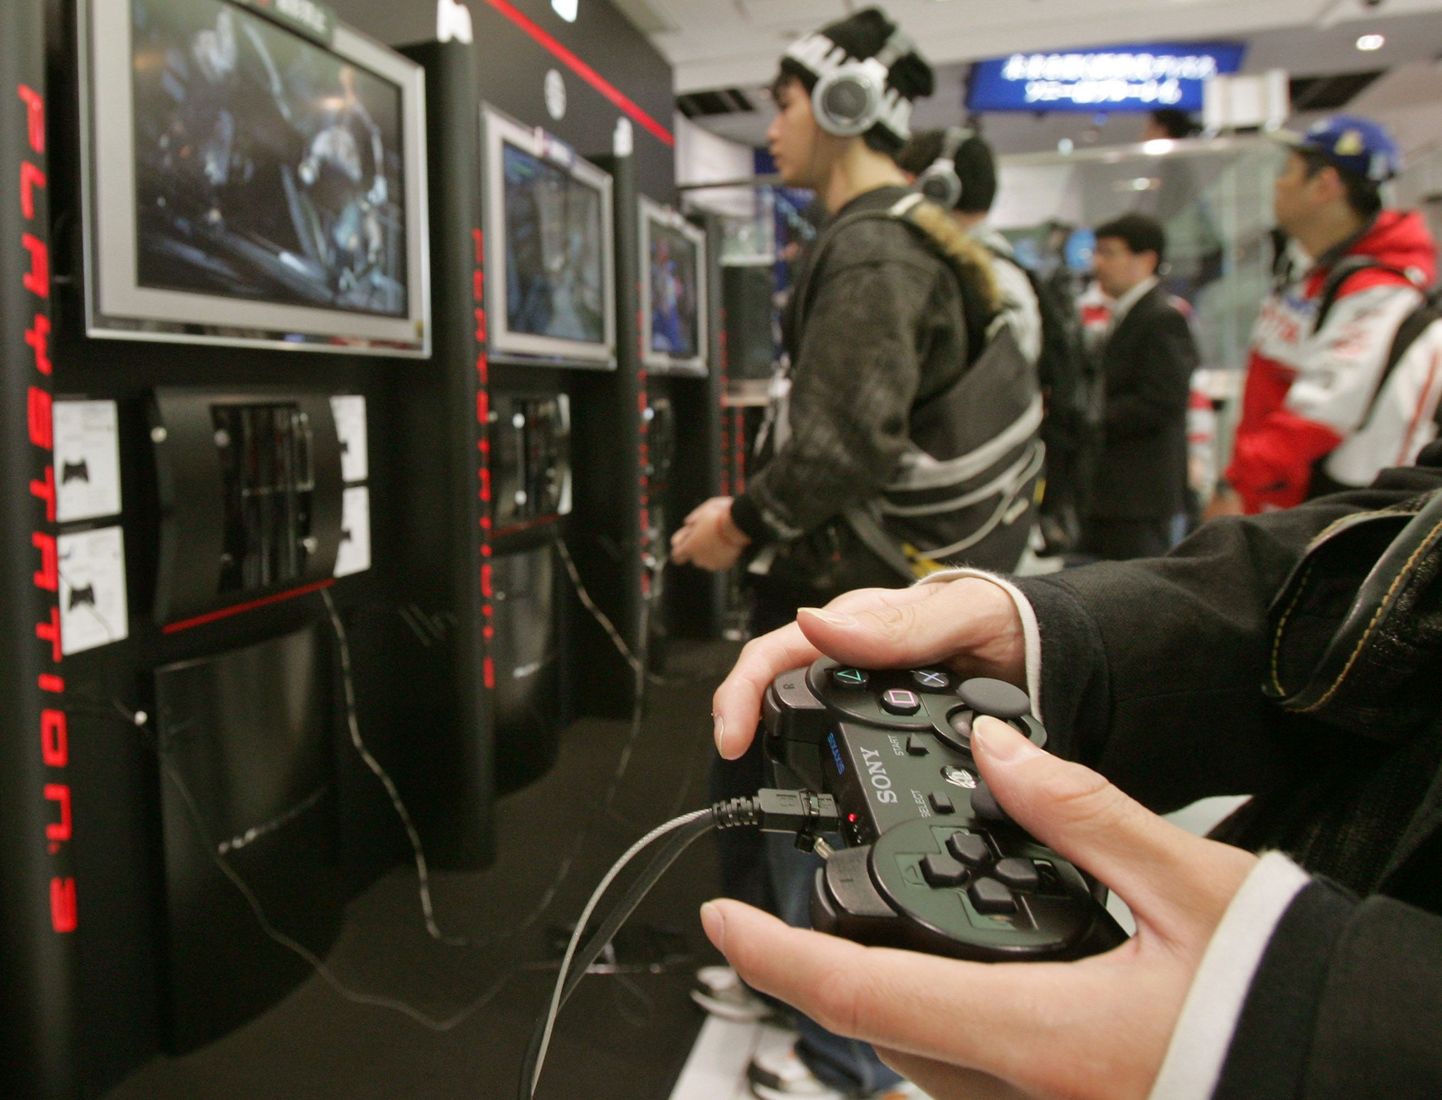 Liigne Playstationi innukas mängimine võib peopesadele tekitada valuliku nahahaiguse, hoiatavad Šveitsi teadlased.